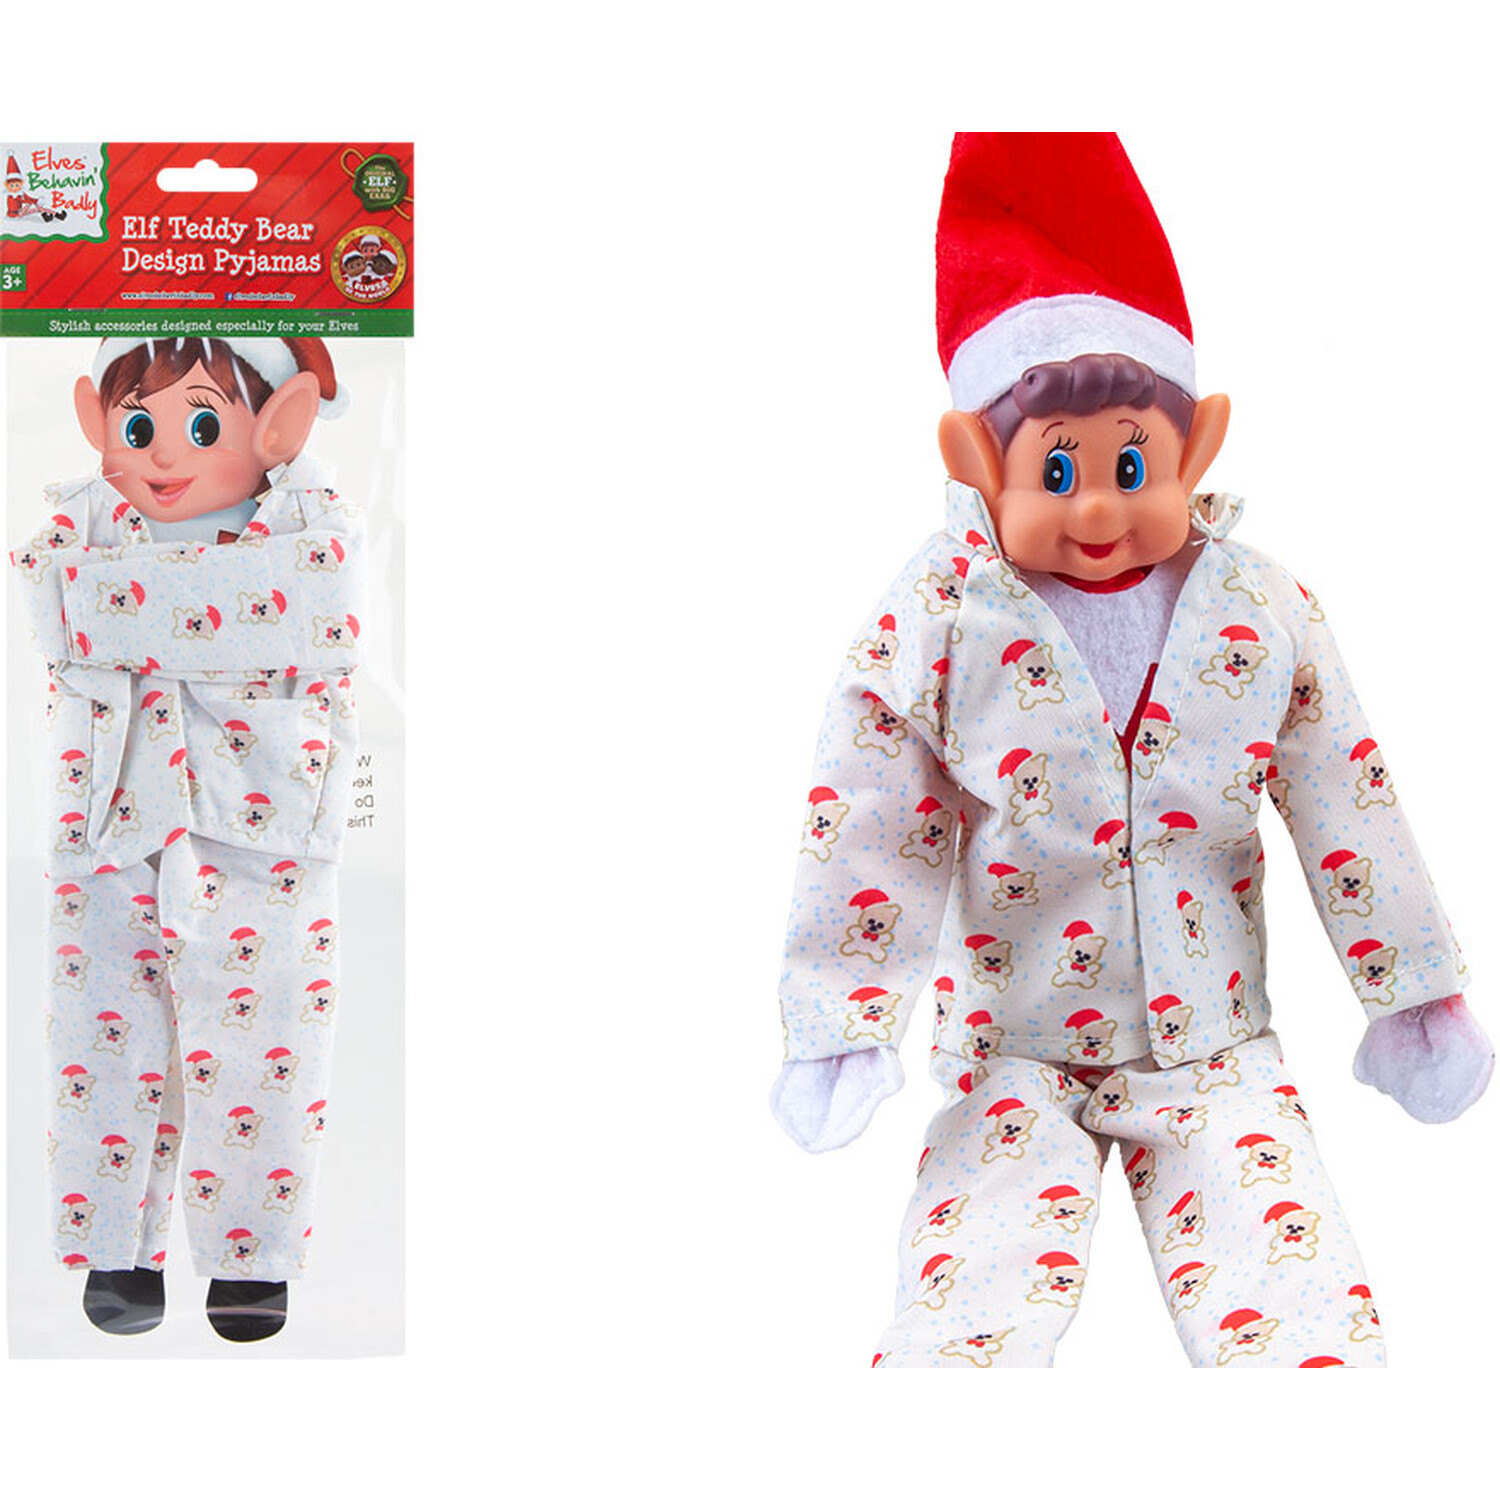 Elf Teddy Bear Pyjamas - White Image